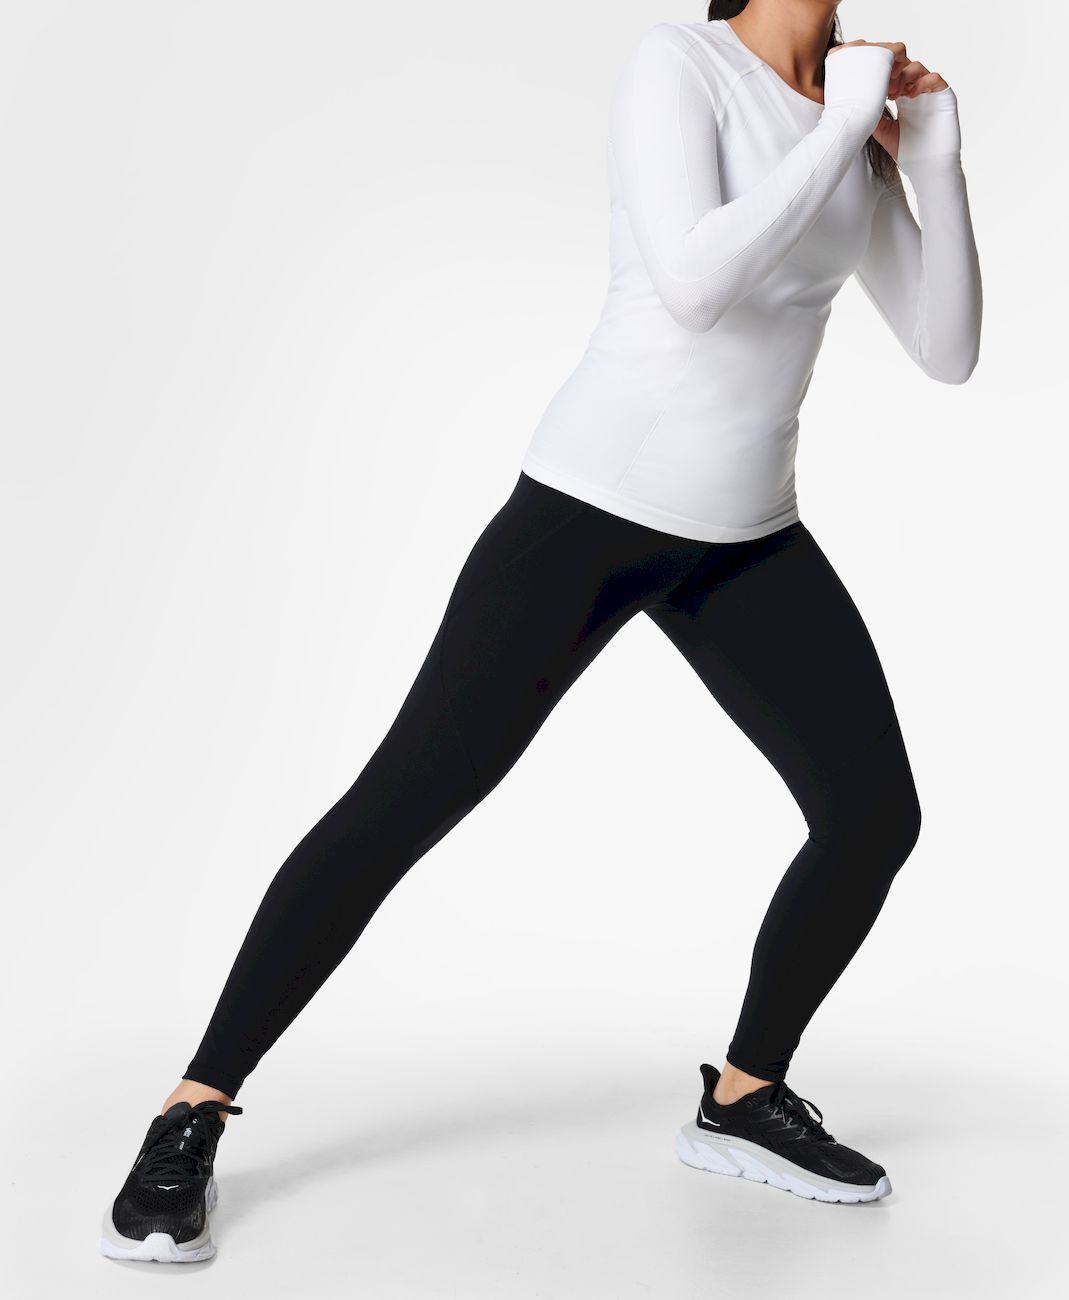 Sweaty Betty Power Workout Leggings - Running leggings - Women's